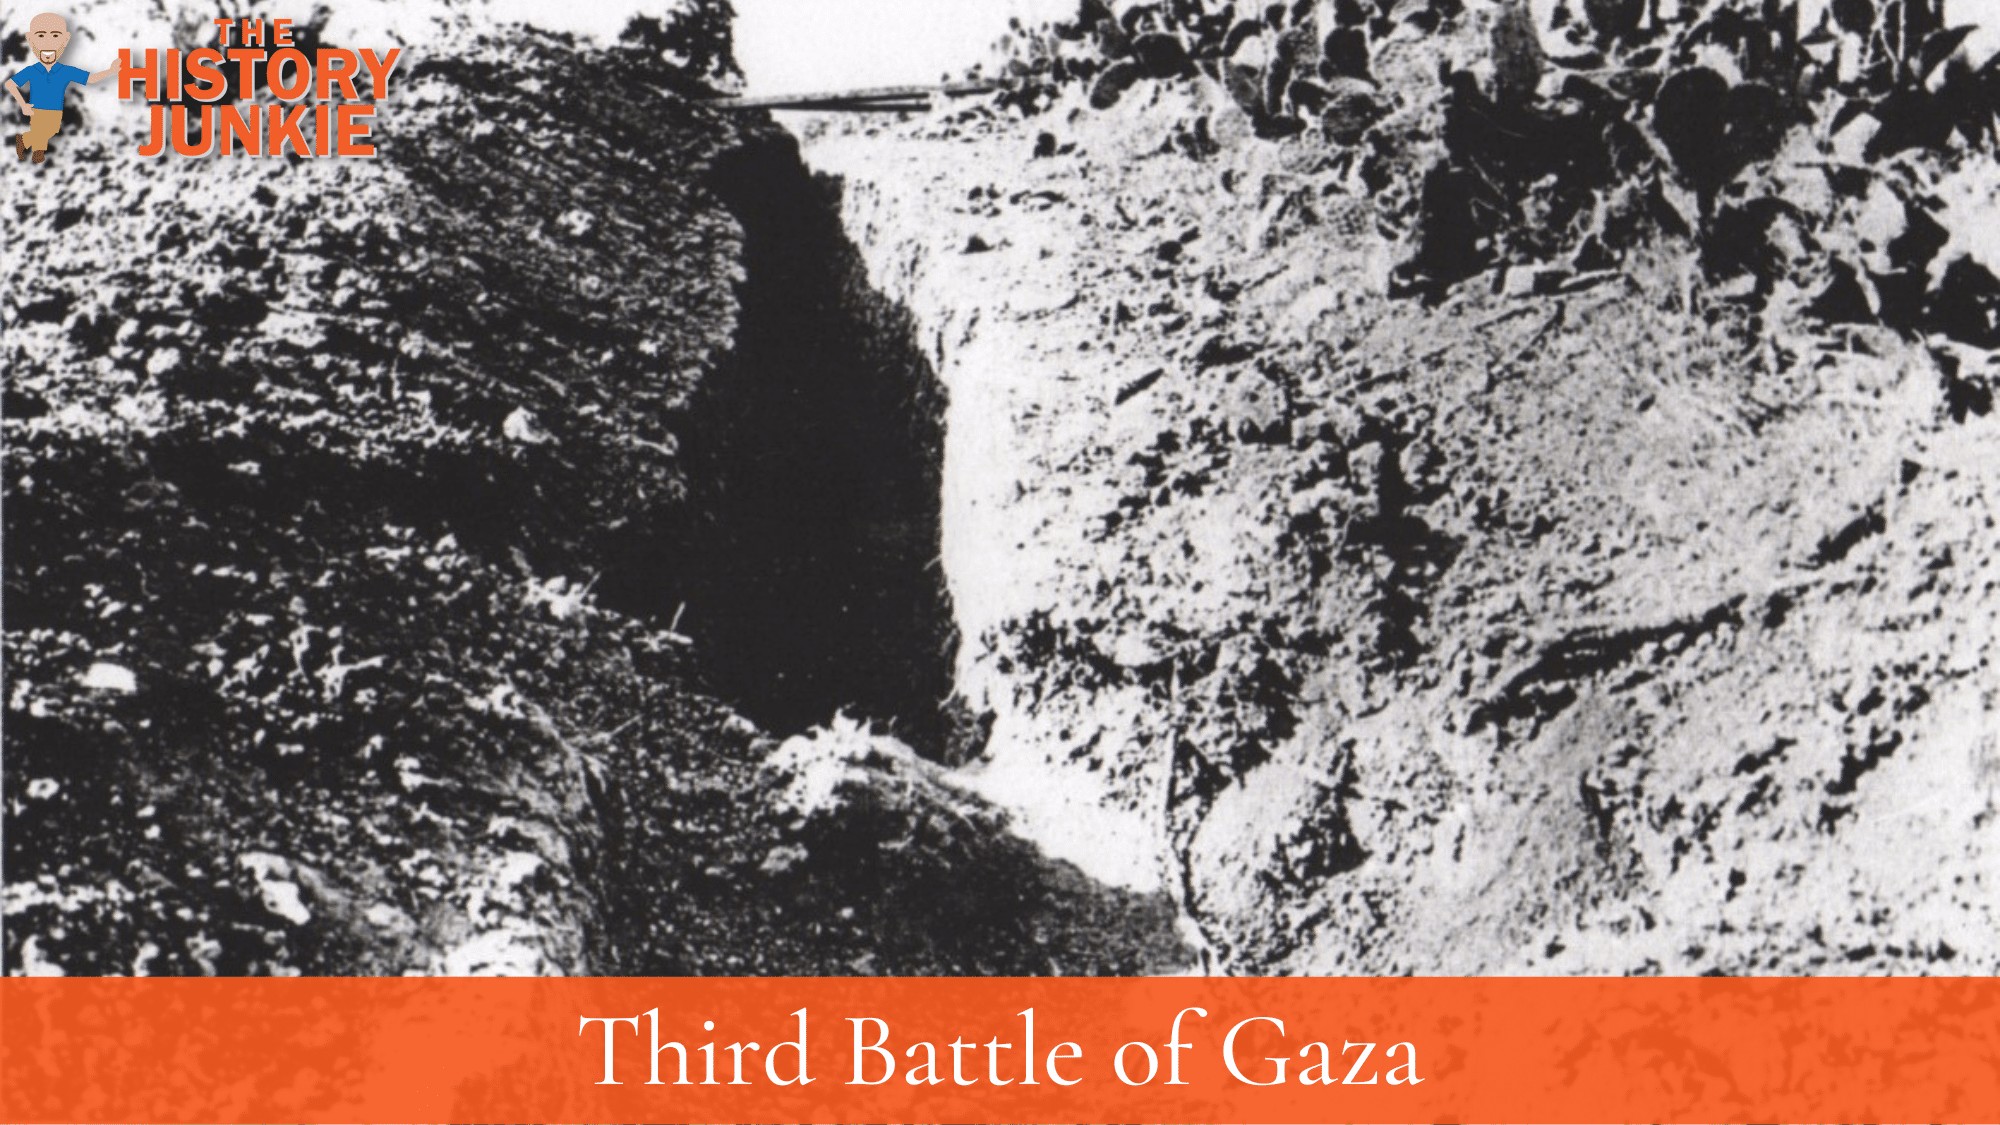 Third Battle of Gaza